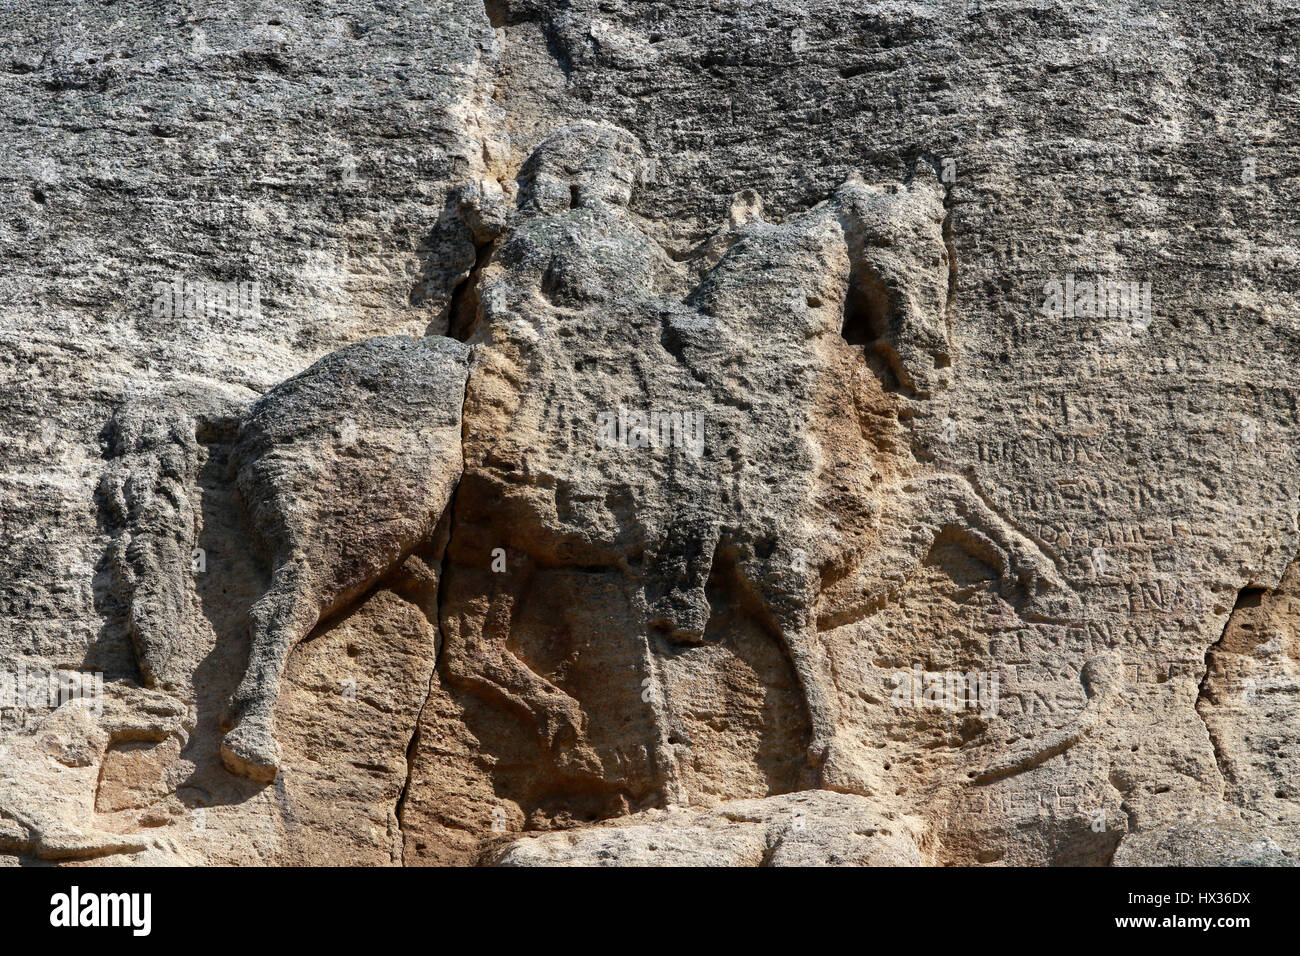 Der Reiter von Madara, der Reiter von Madara ist einer frühen mittelalterlichen großen Felsen Relief. Dies ist die globale Simbol Bulgariens. Der Reiter von Madara Stockfoto